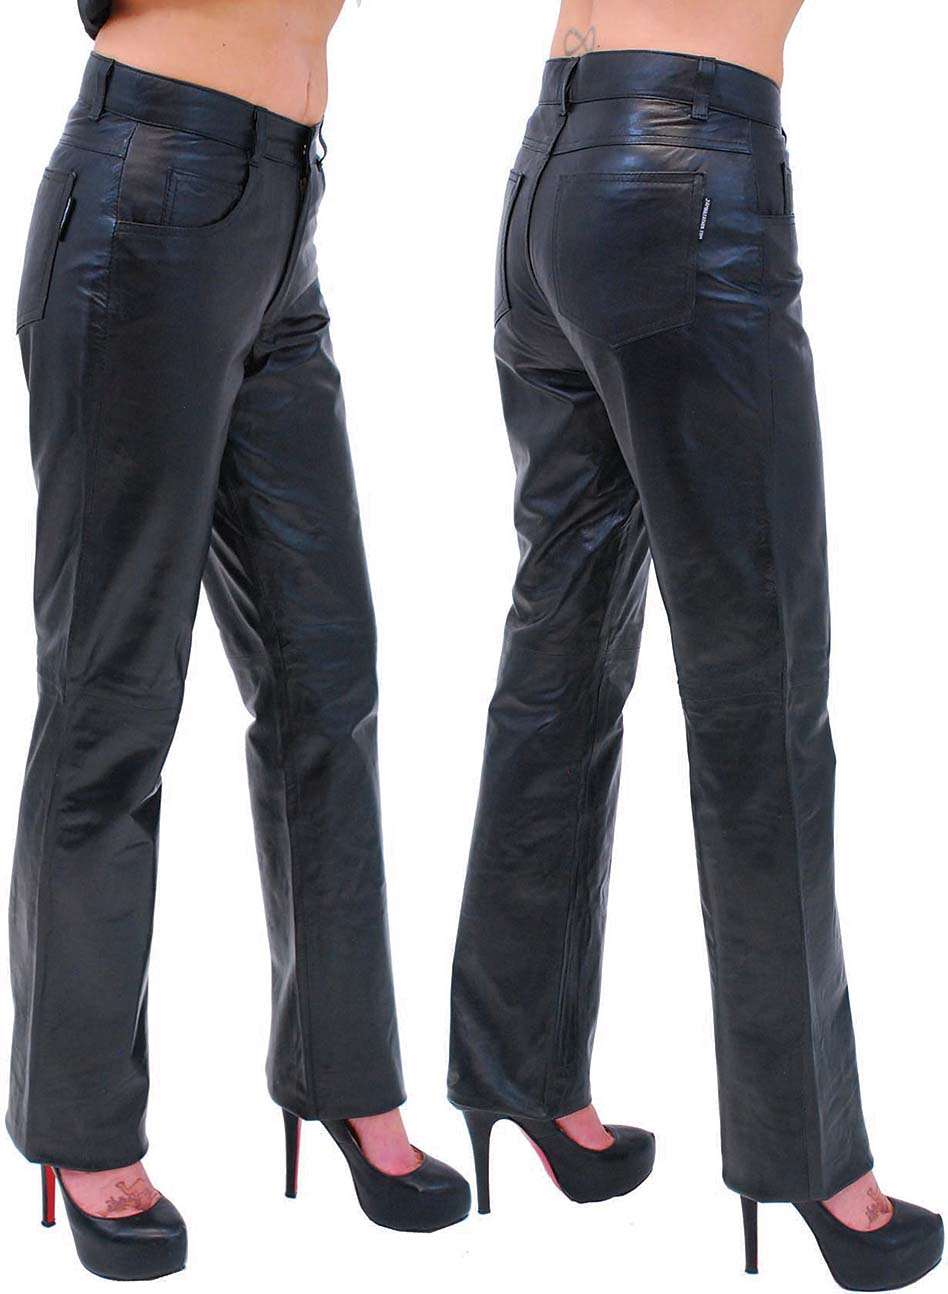 Lambskin Leather Pants for Women - Maker of Jacket